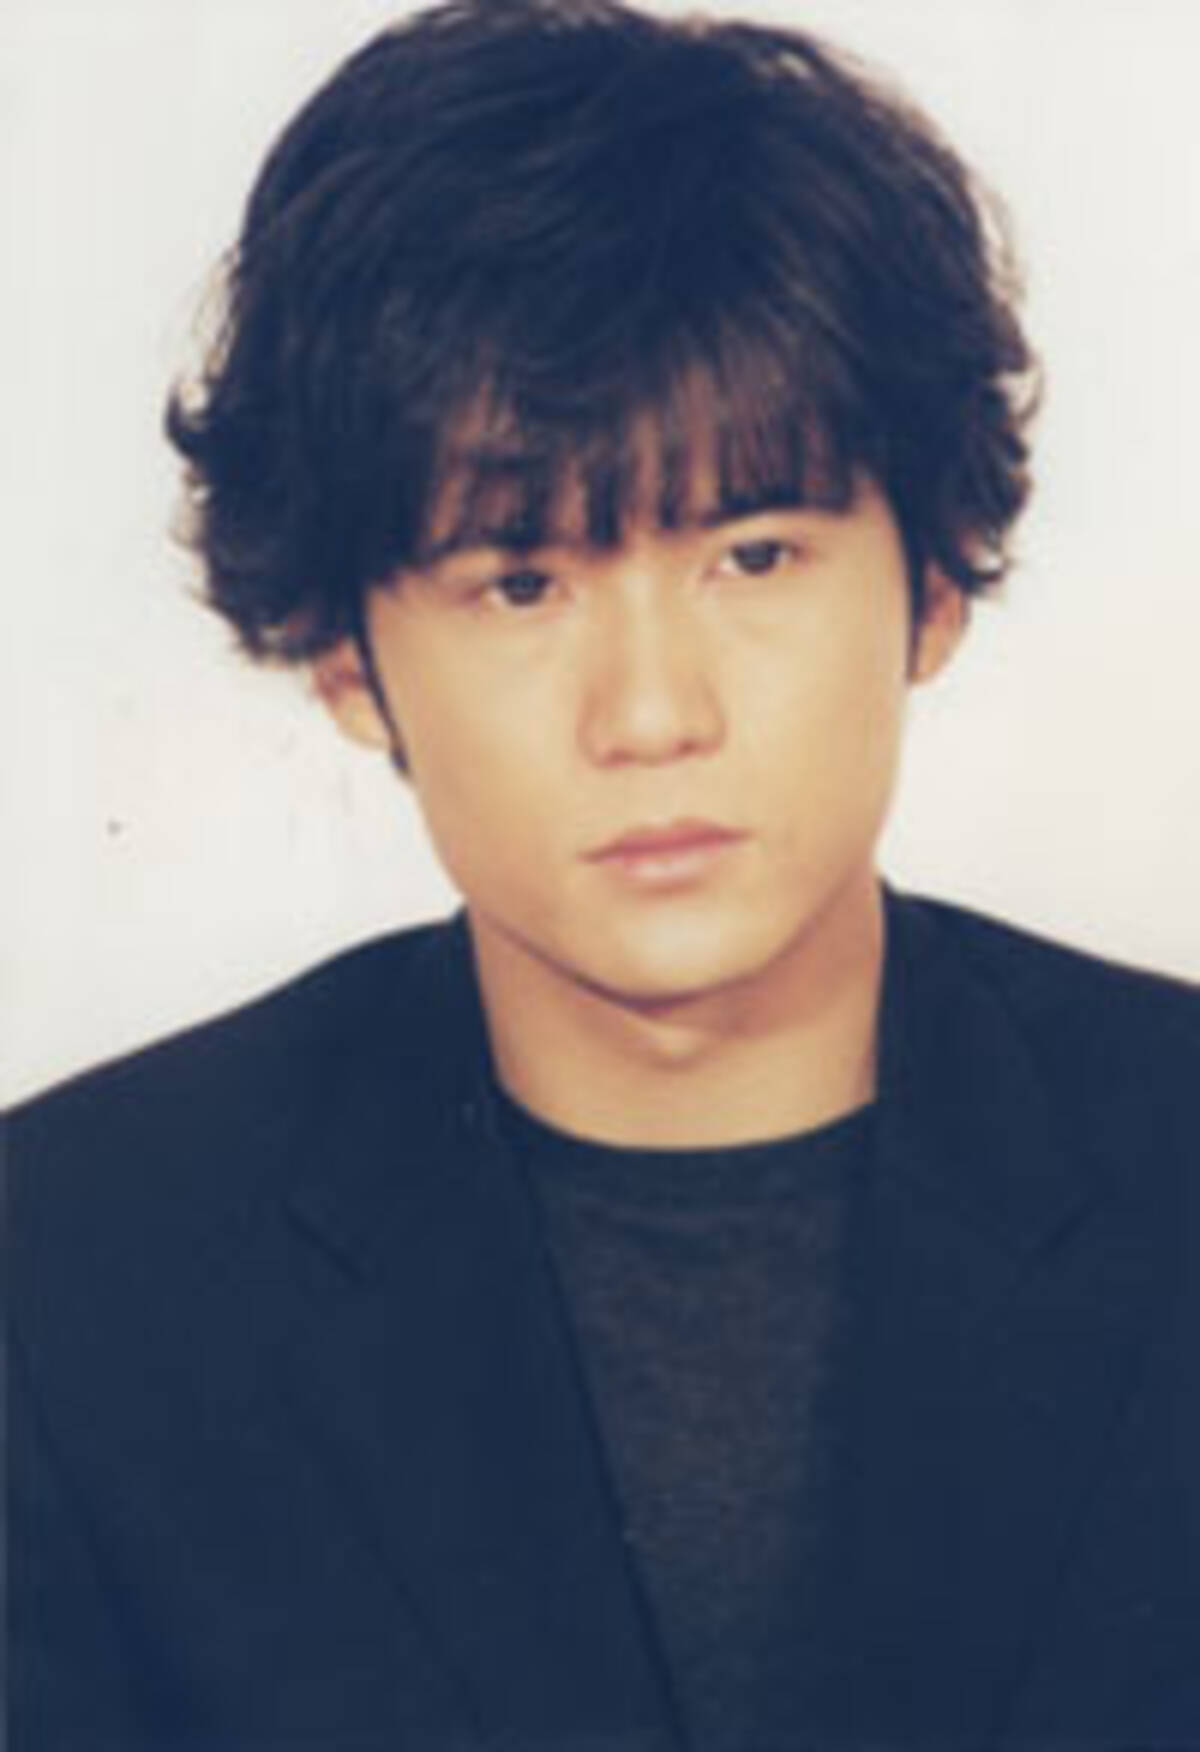 稲垣吾郎の貴重な入浴シーンに高まるファンの期待 08年12月11日 エキサイトニュース